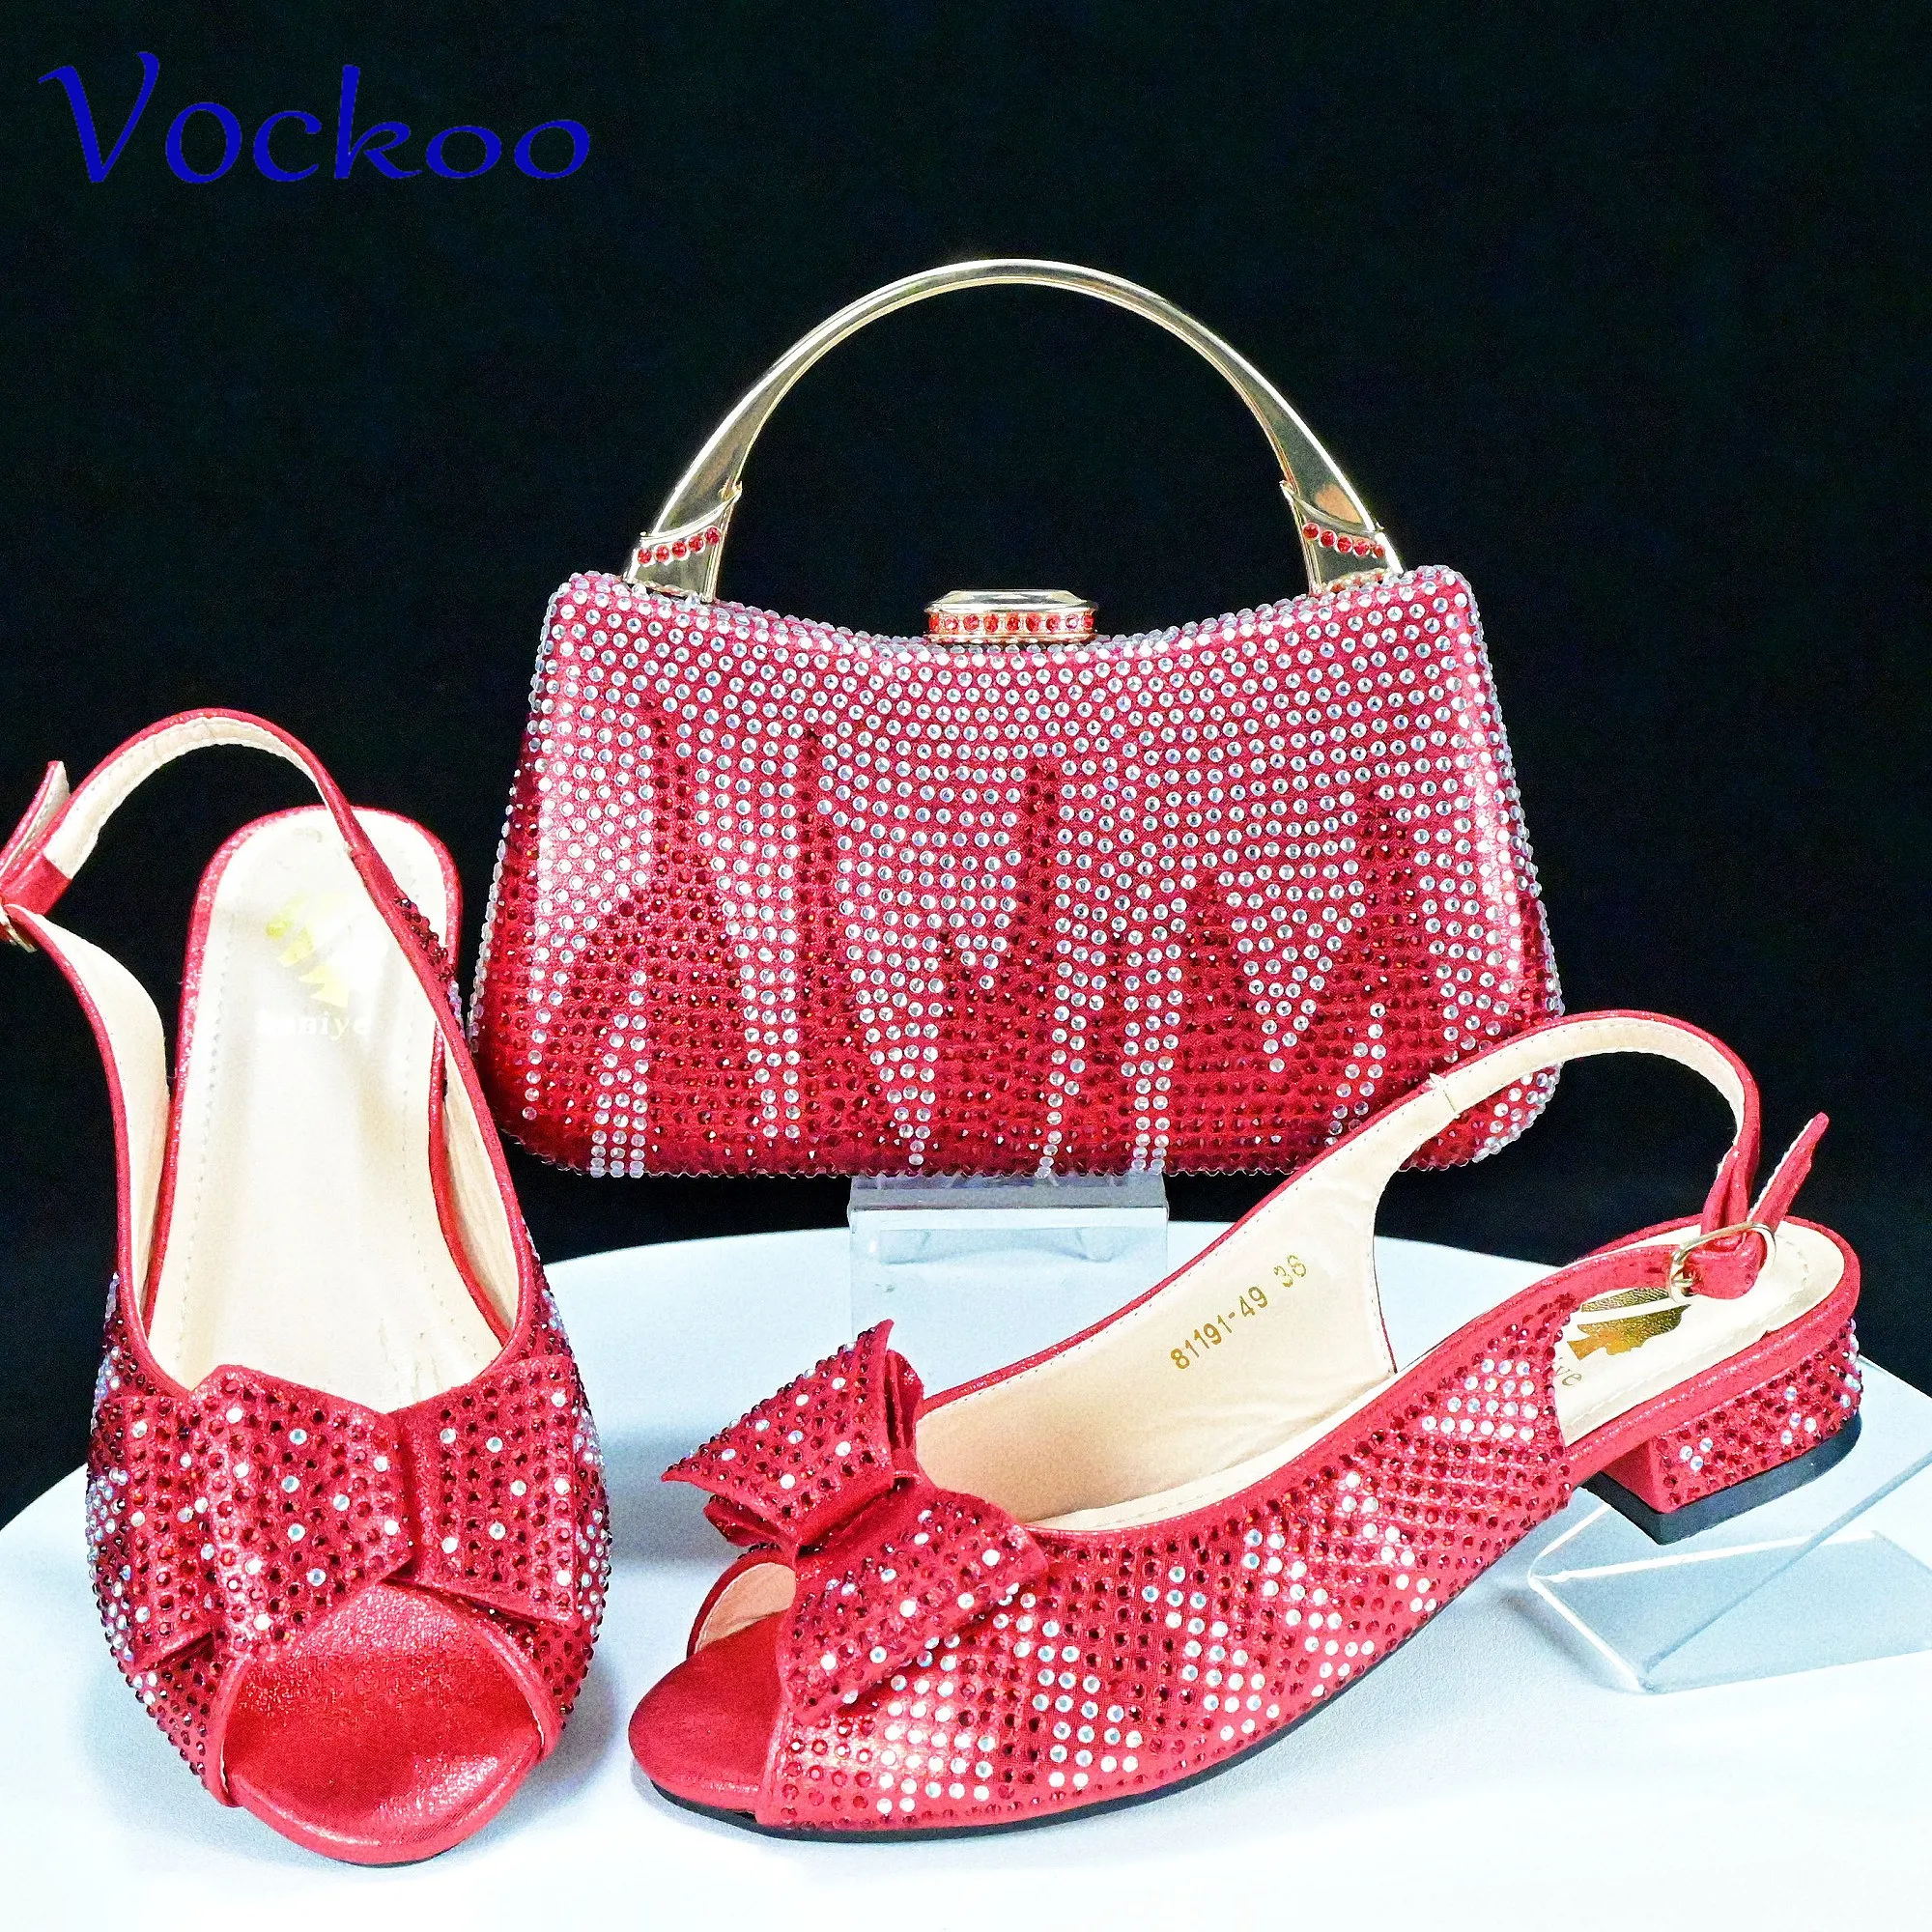 Красный цвет, высококачественная классическая обувь в стиле ретро, сумка в тон с аппликациями, Сверкающие кристаллы, низкие каблуки для вечеринки в саду